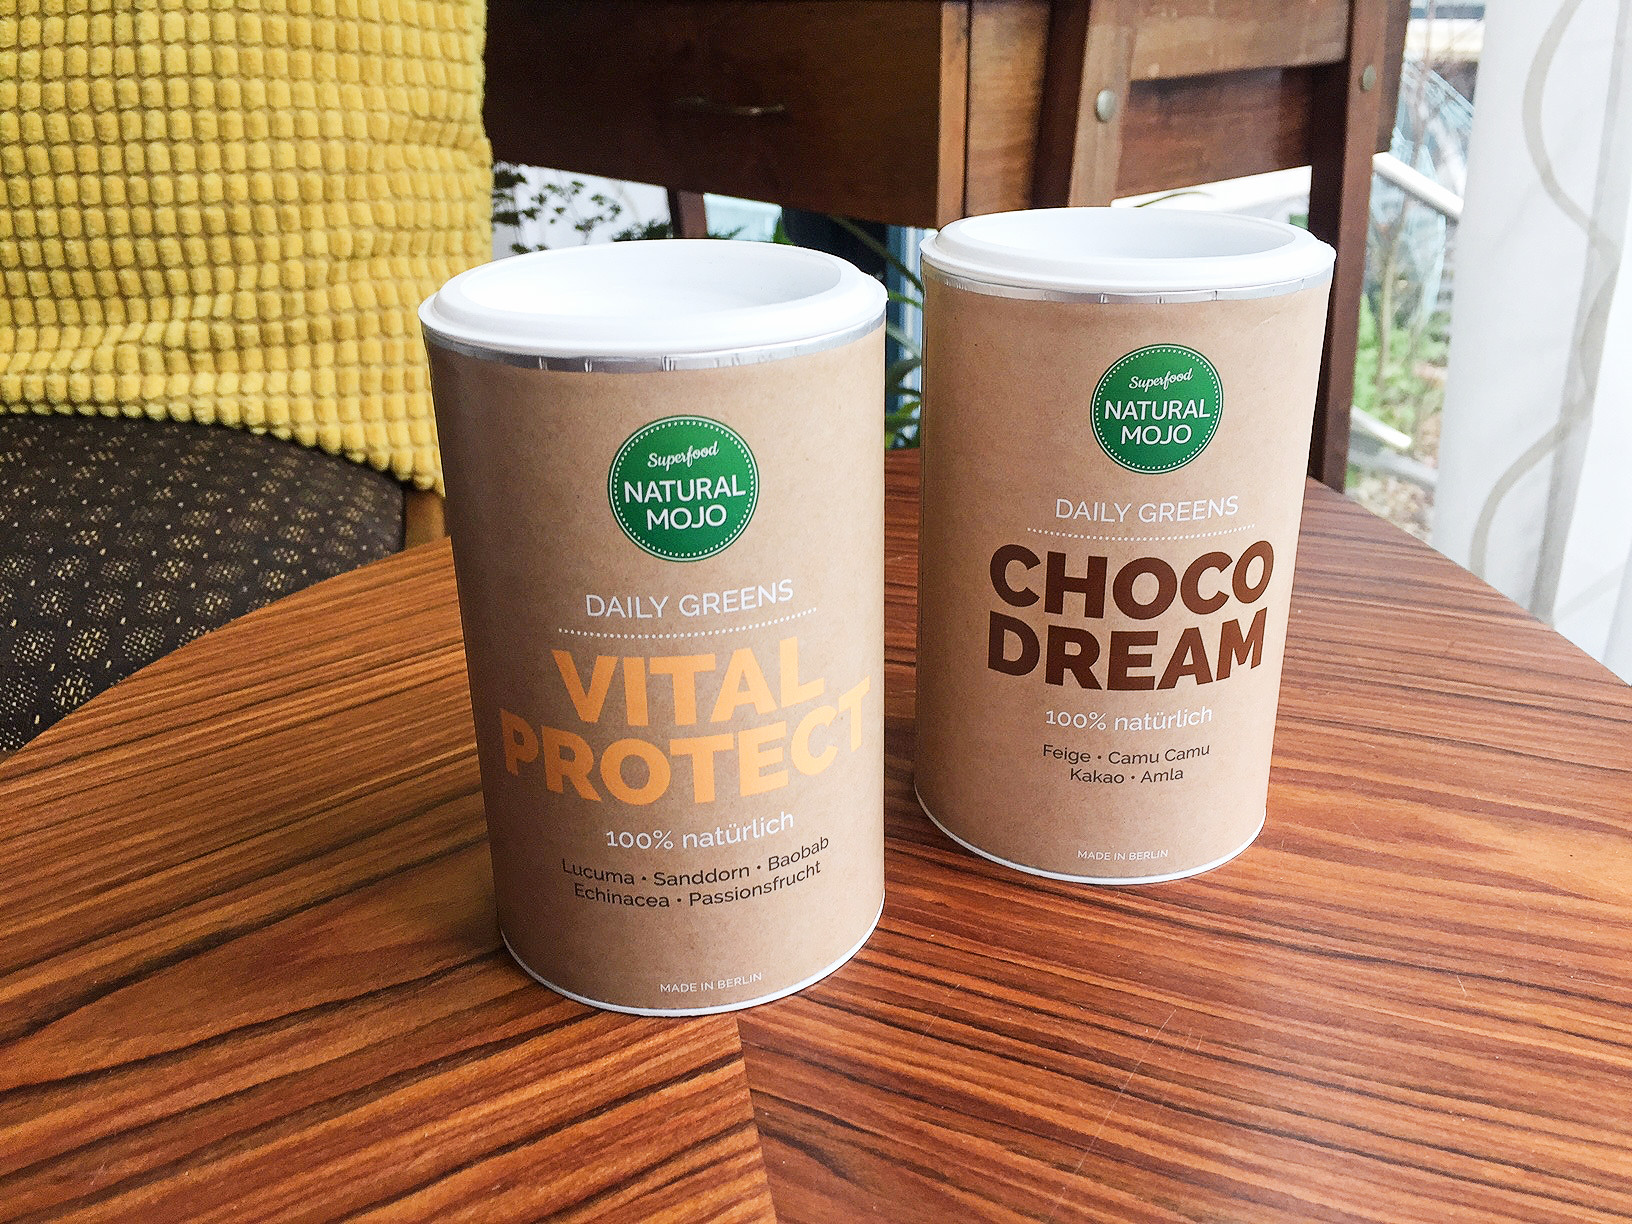 Natural Mojo Choco Dream Vital Protect Daily Greens